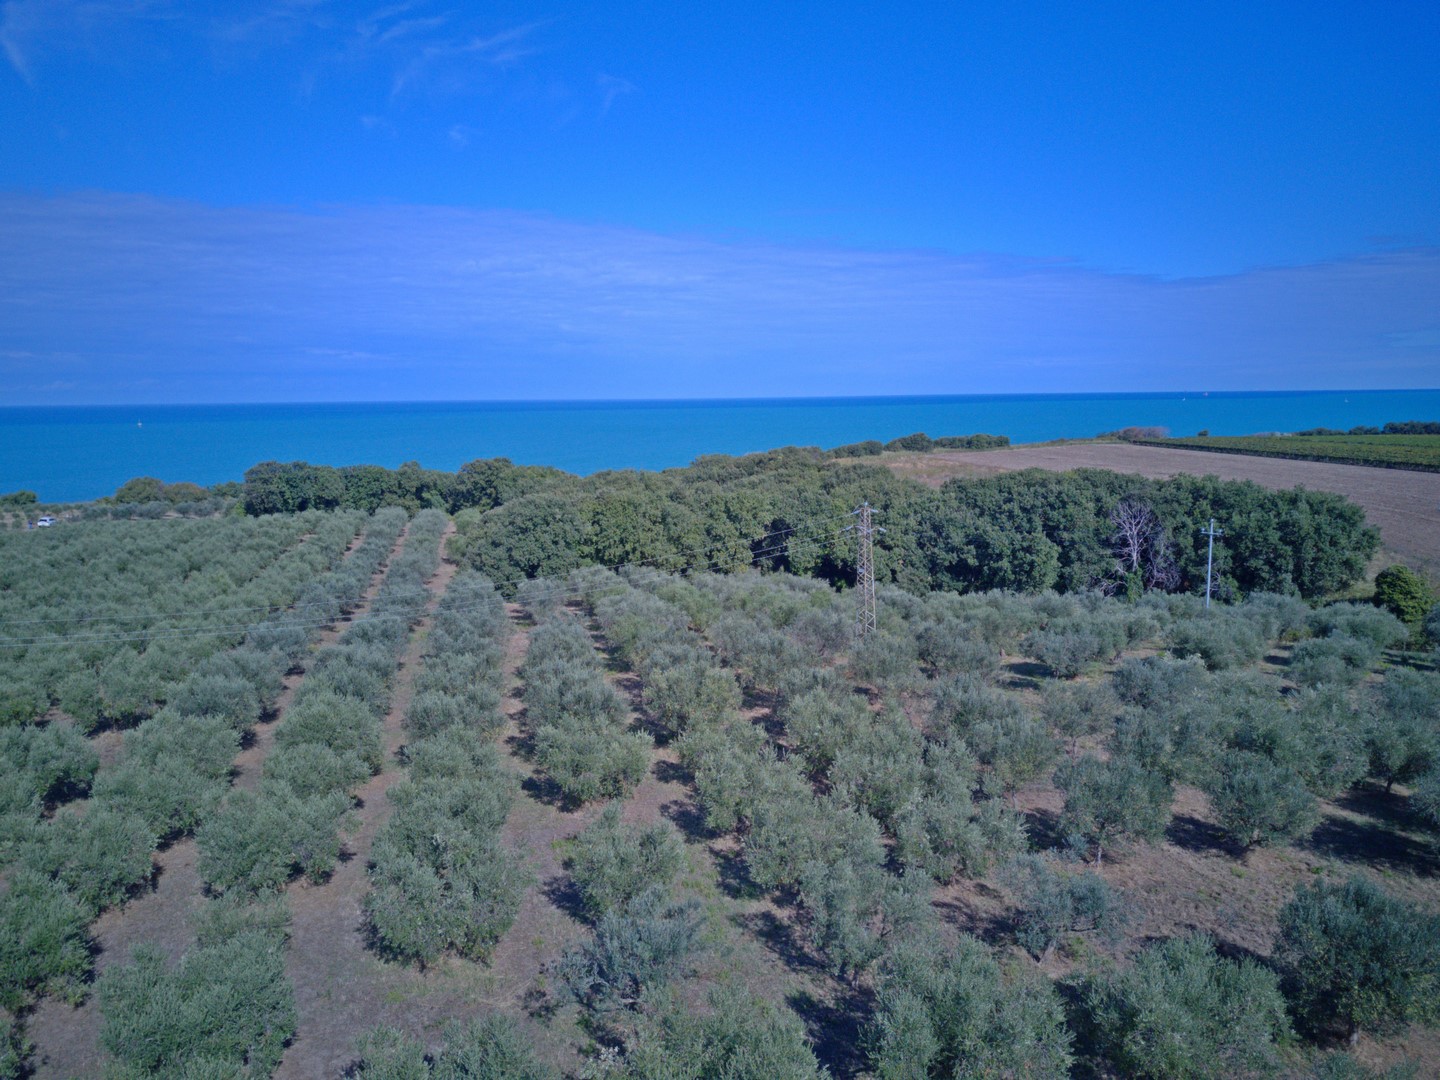 Olivenproduktion am Meer